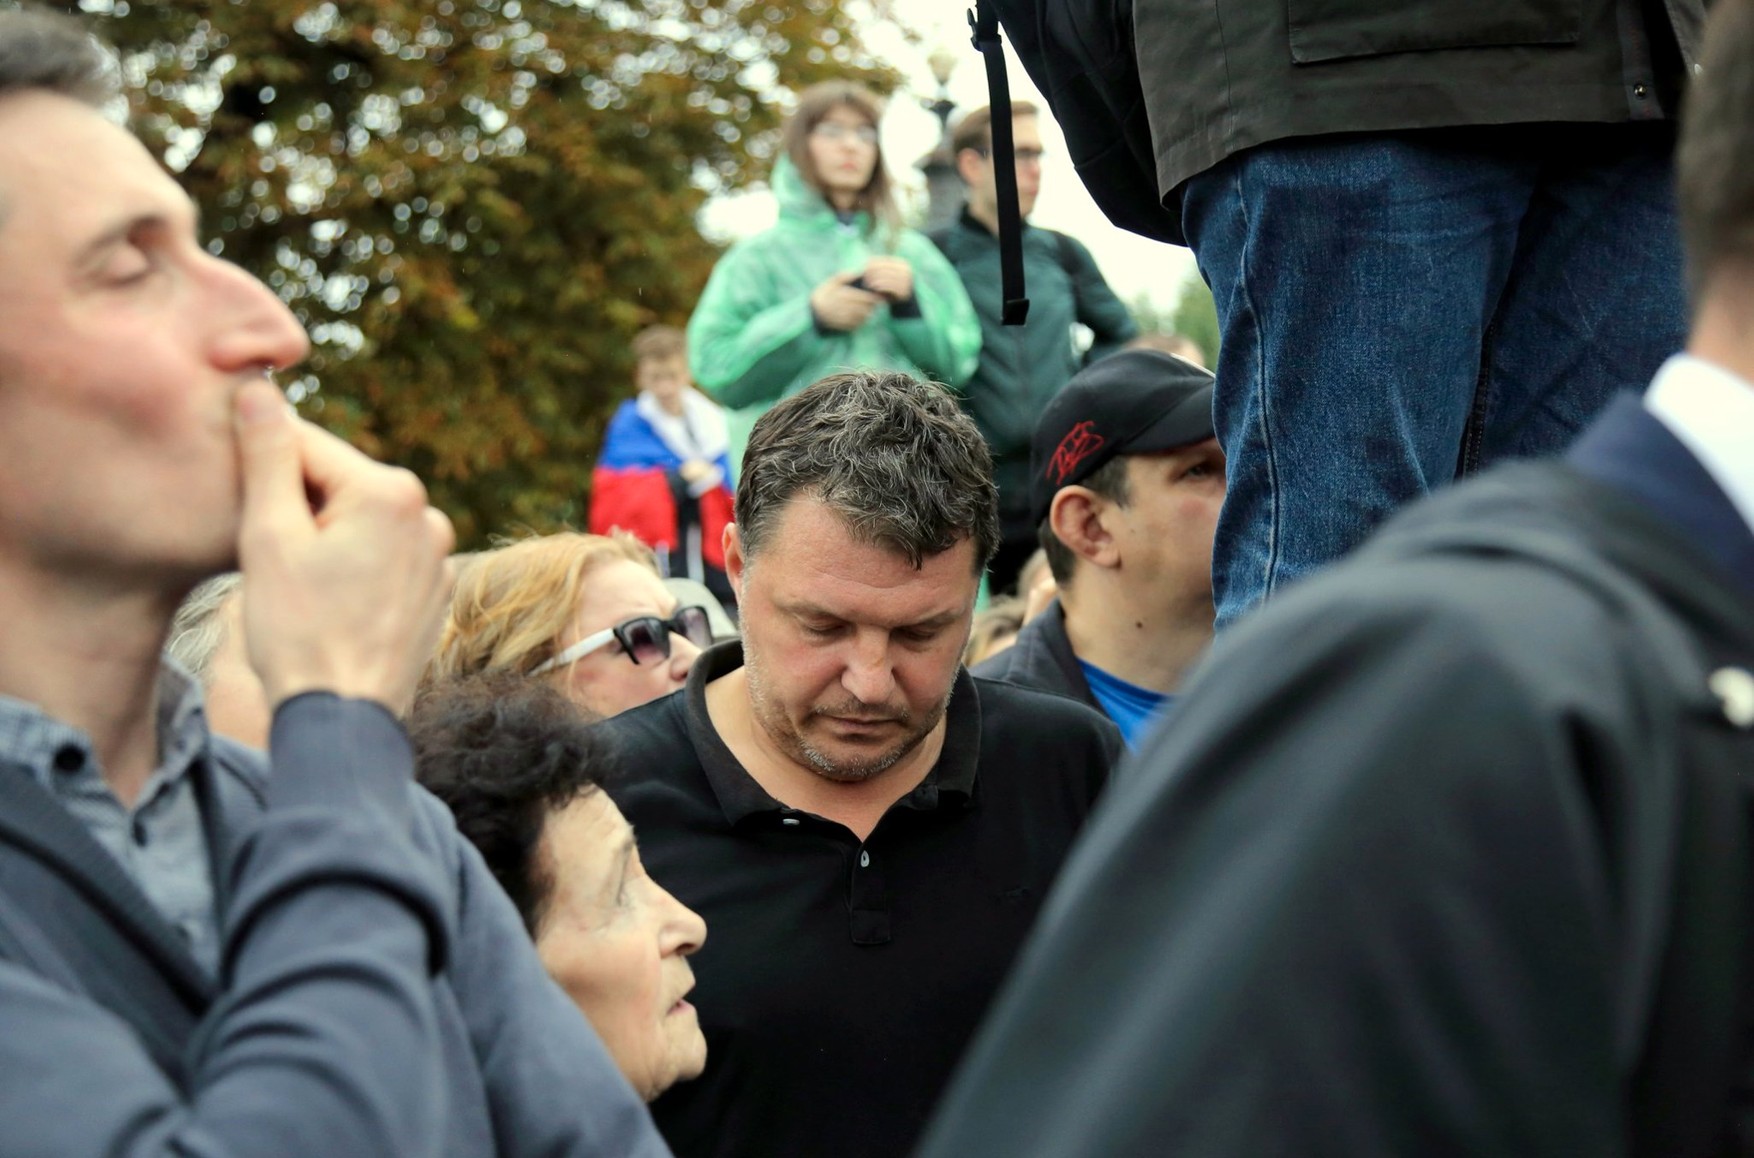 «Дело Пономарева используют как повод прийти за теми, кто борется с режимом». Экс-мундеп Москвы об обысках и новых «маски-шоу»